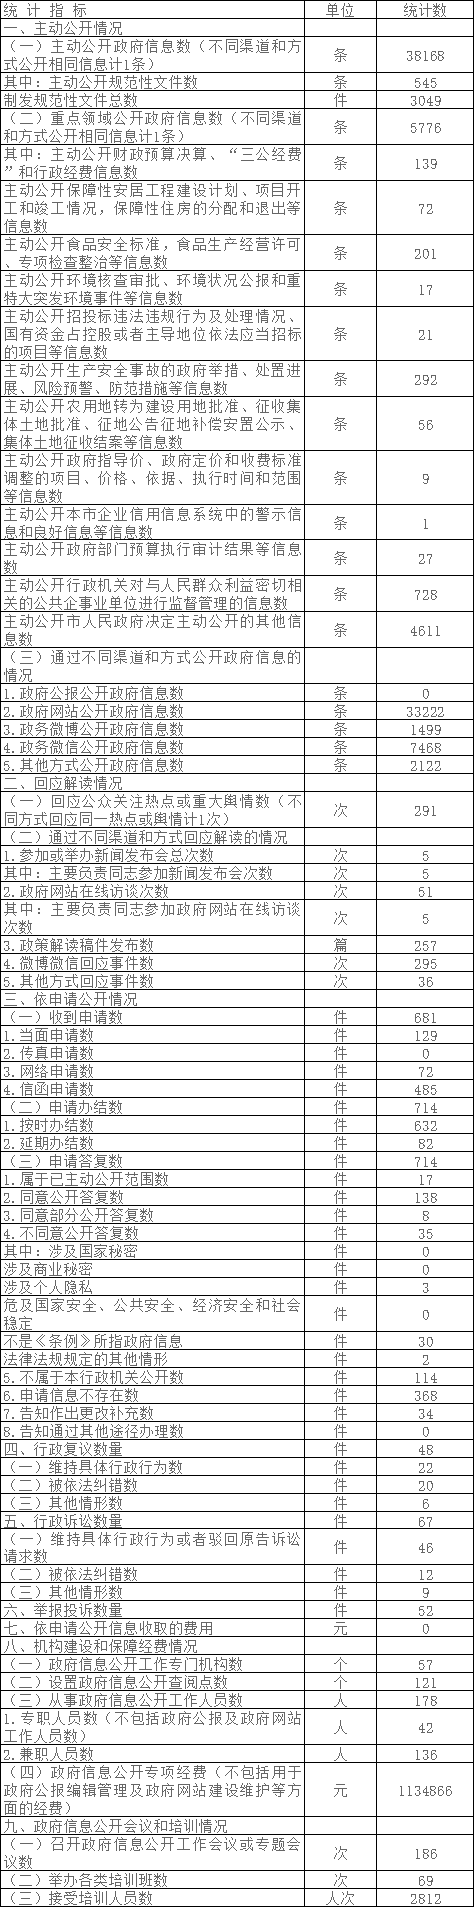 北京市大興區人民政府政府信息公開情況統計表(2017年度)